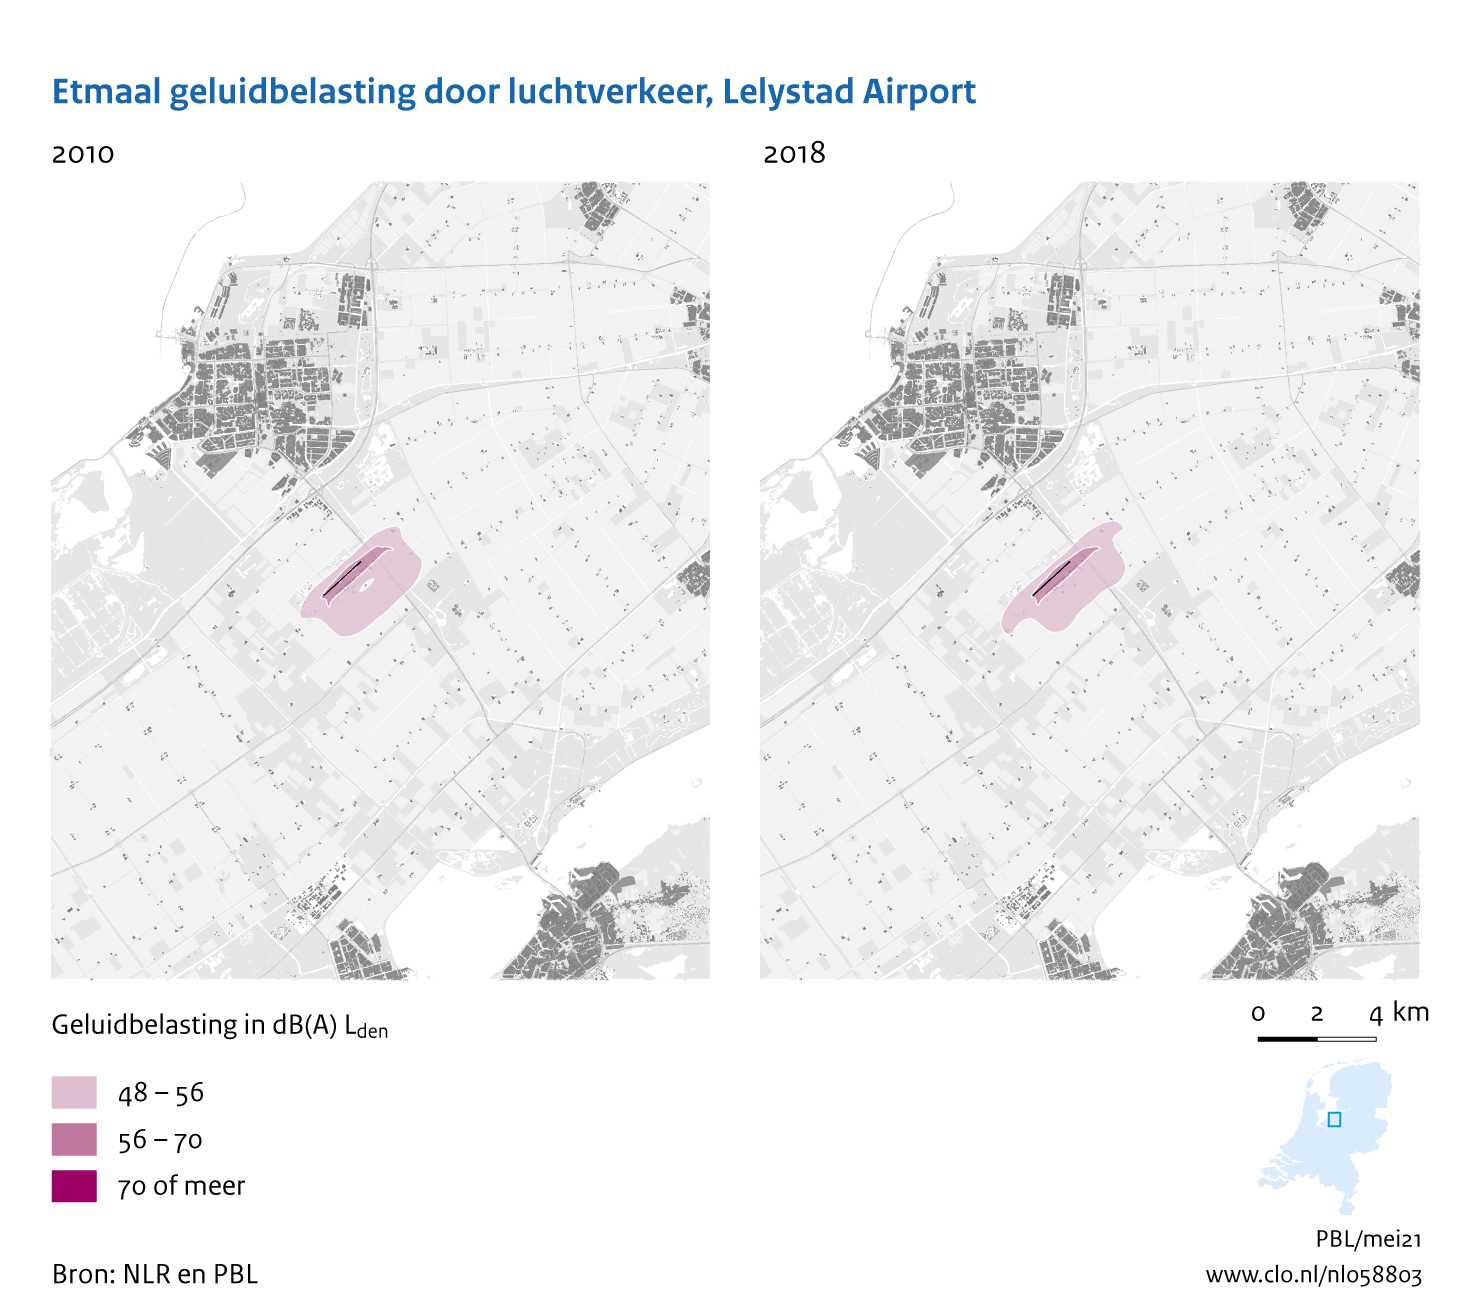 Figuur Etmaal geluidbelasting door luchtvaart, Lelystad Airport, 2010-2018. In de rest van de tekst wordt deze figuur uitgebreider uitgelegd.